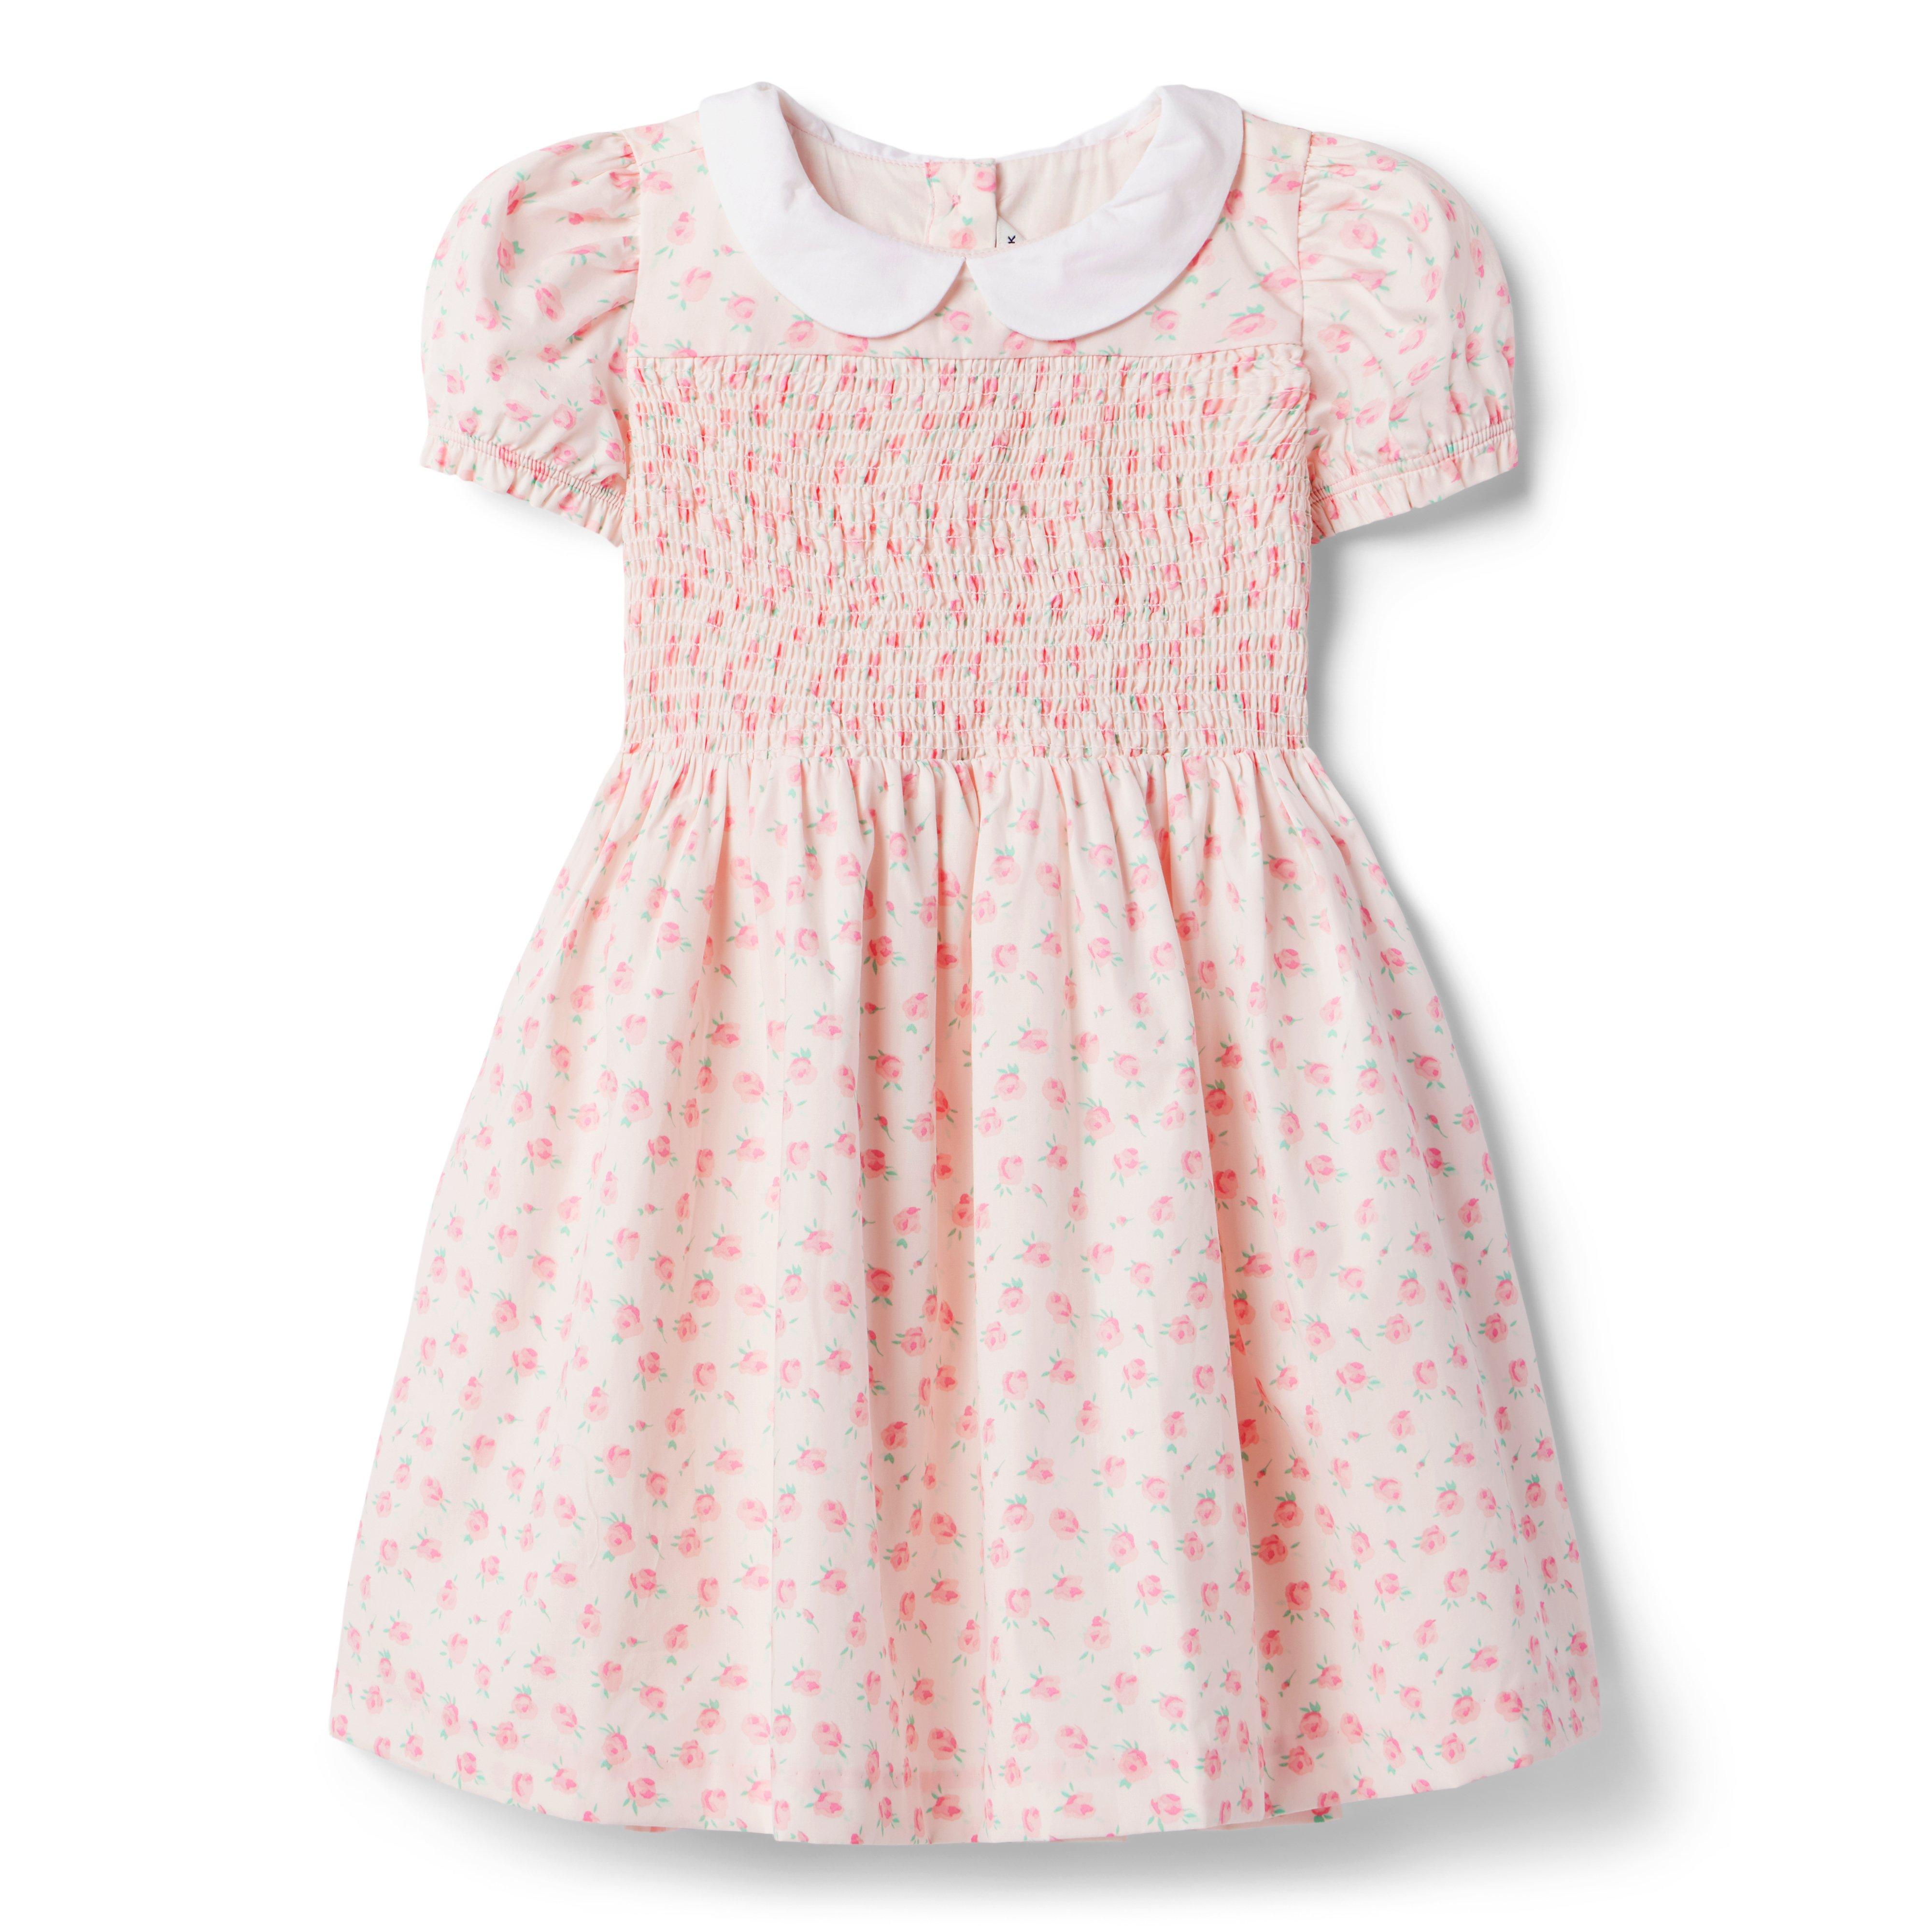 Flower Girl Dress, Toddler Flower Girl Dress, Smocked Dresses Baby Girl,  Smocked Summer Dress, Baby Girl White Dress, 412608 CC174 -  Canada